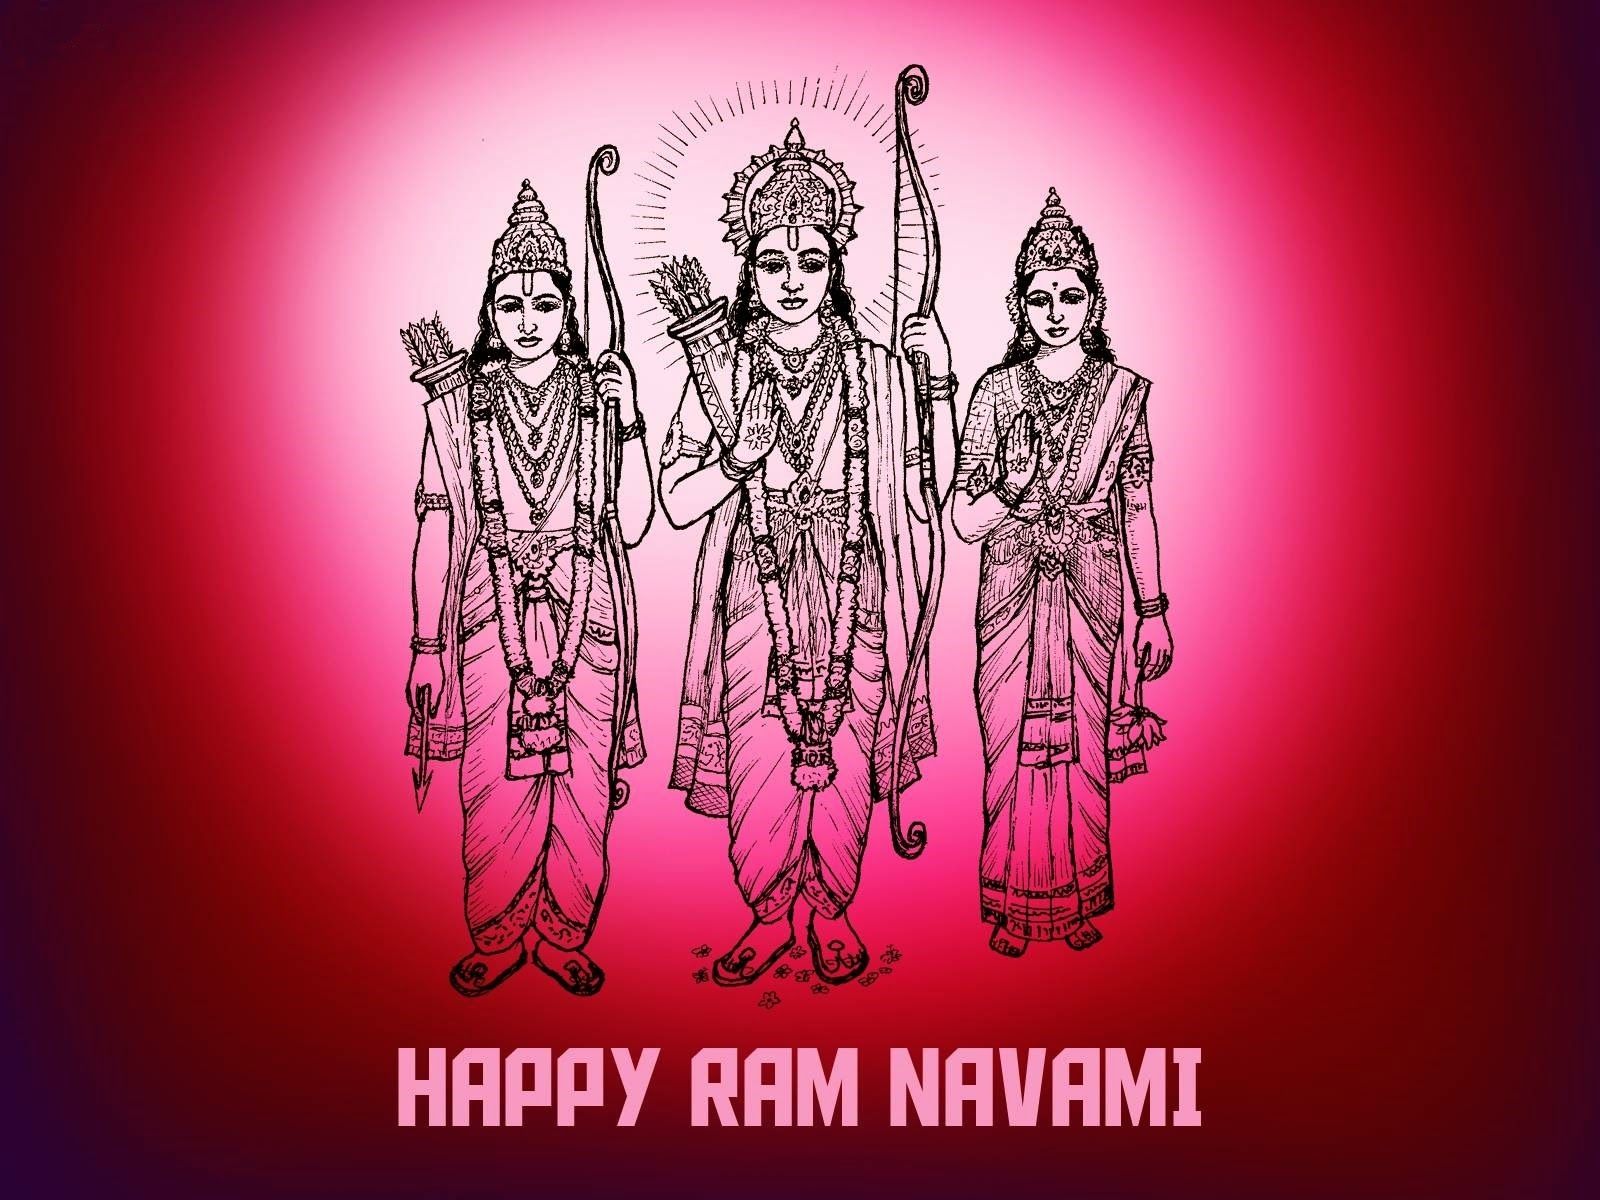 Missing Beats of Life: Happy Ram Navami 2014 HD Wallpaper and Image